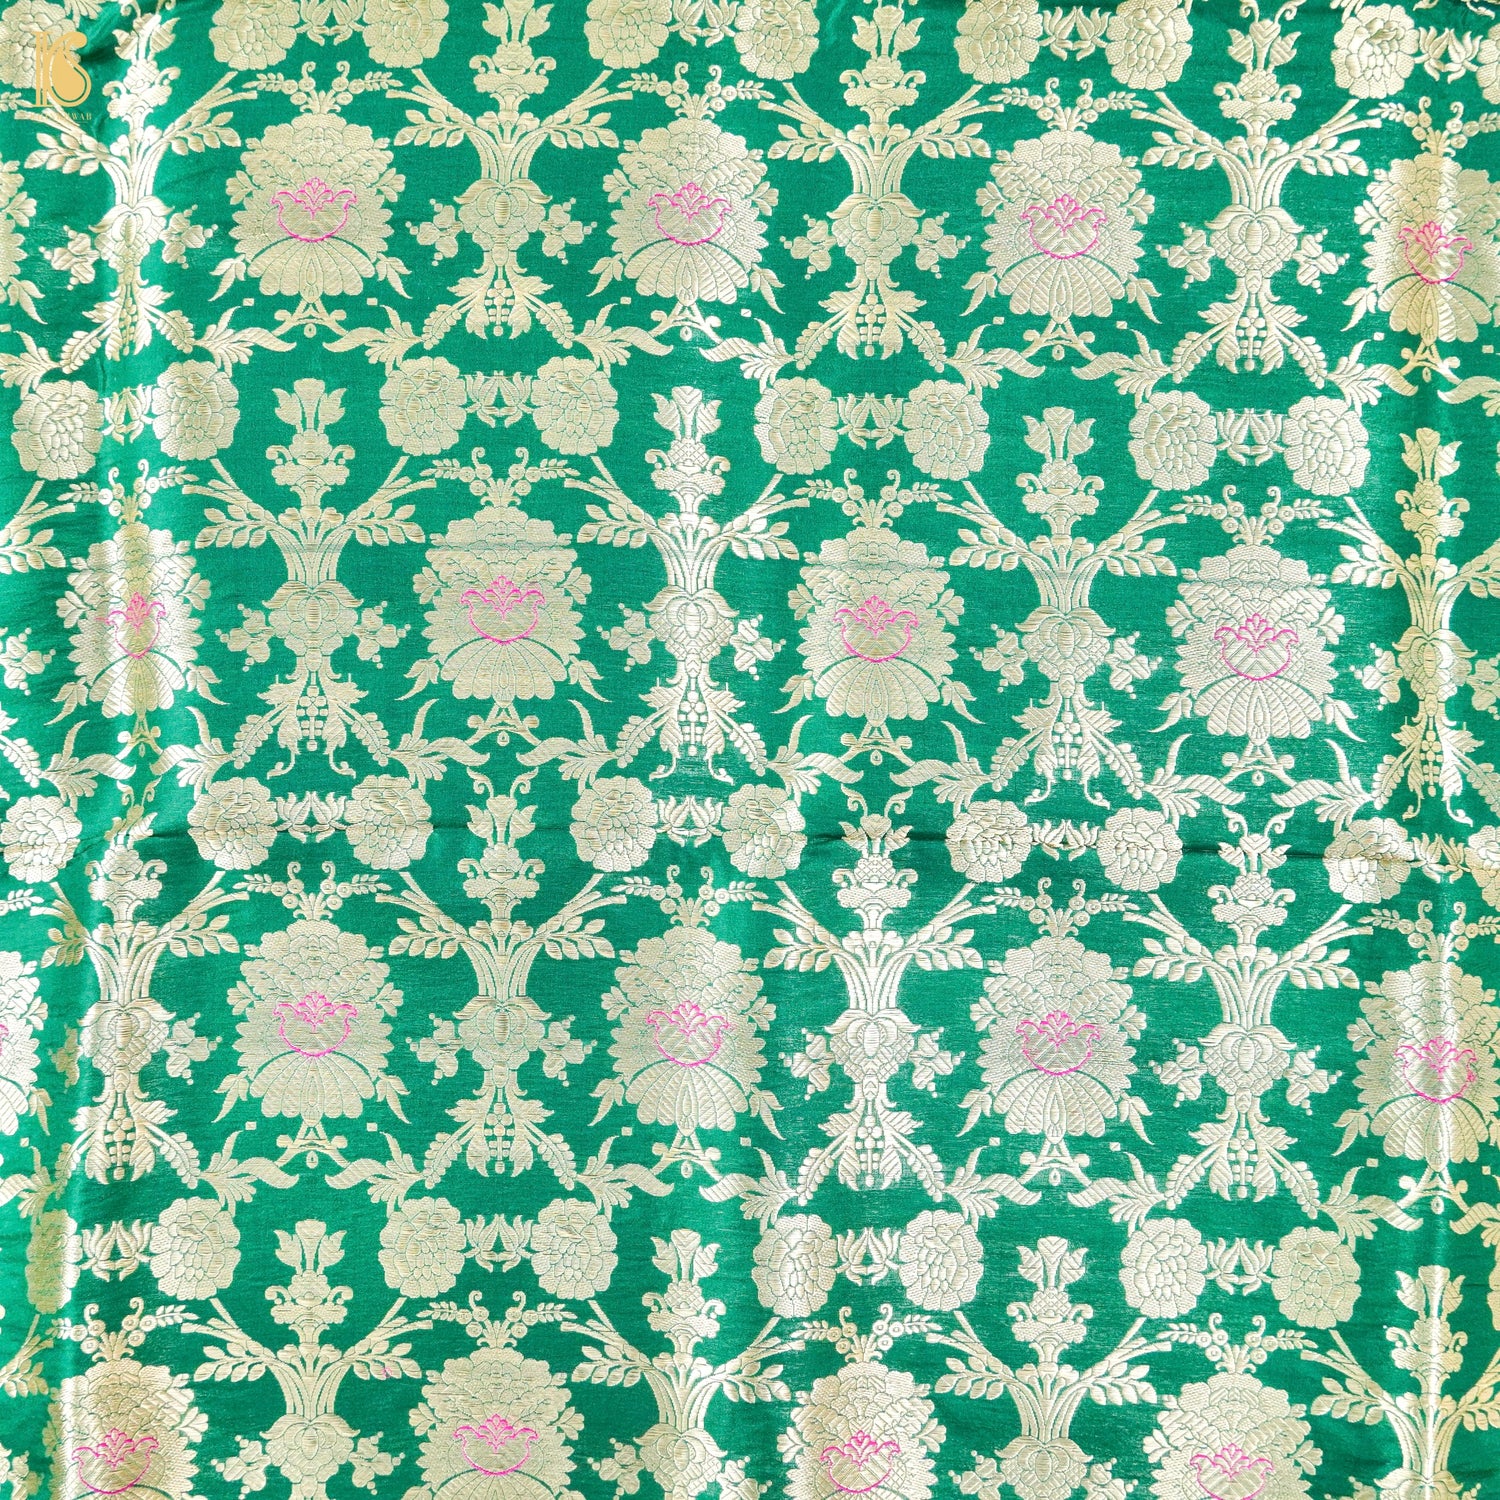 Green Pure Brocade Banarasi Mehraab Boota Fabric